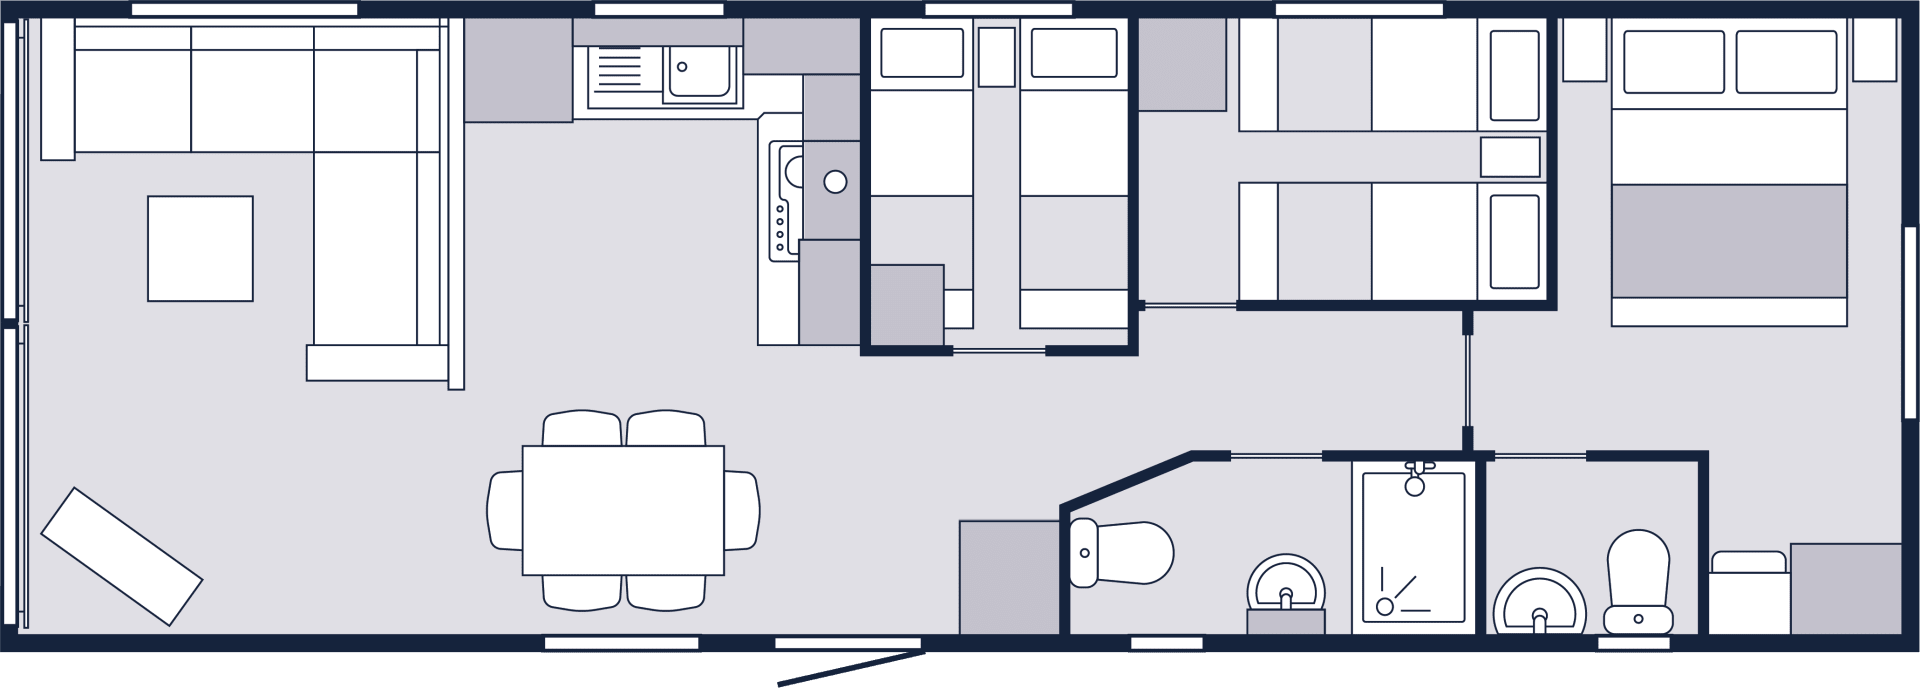 Silverwood-36x12-3bedroom-floorplan.png